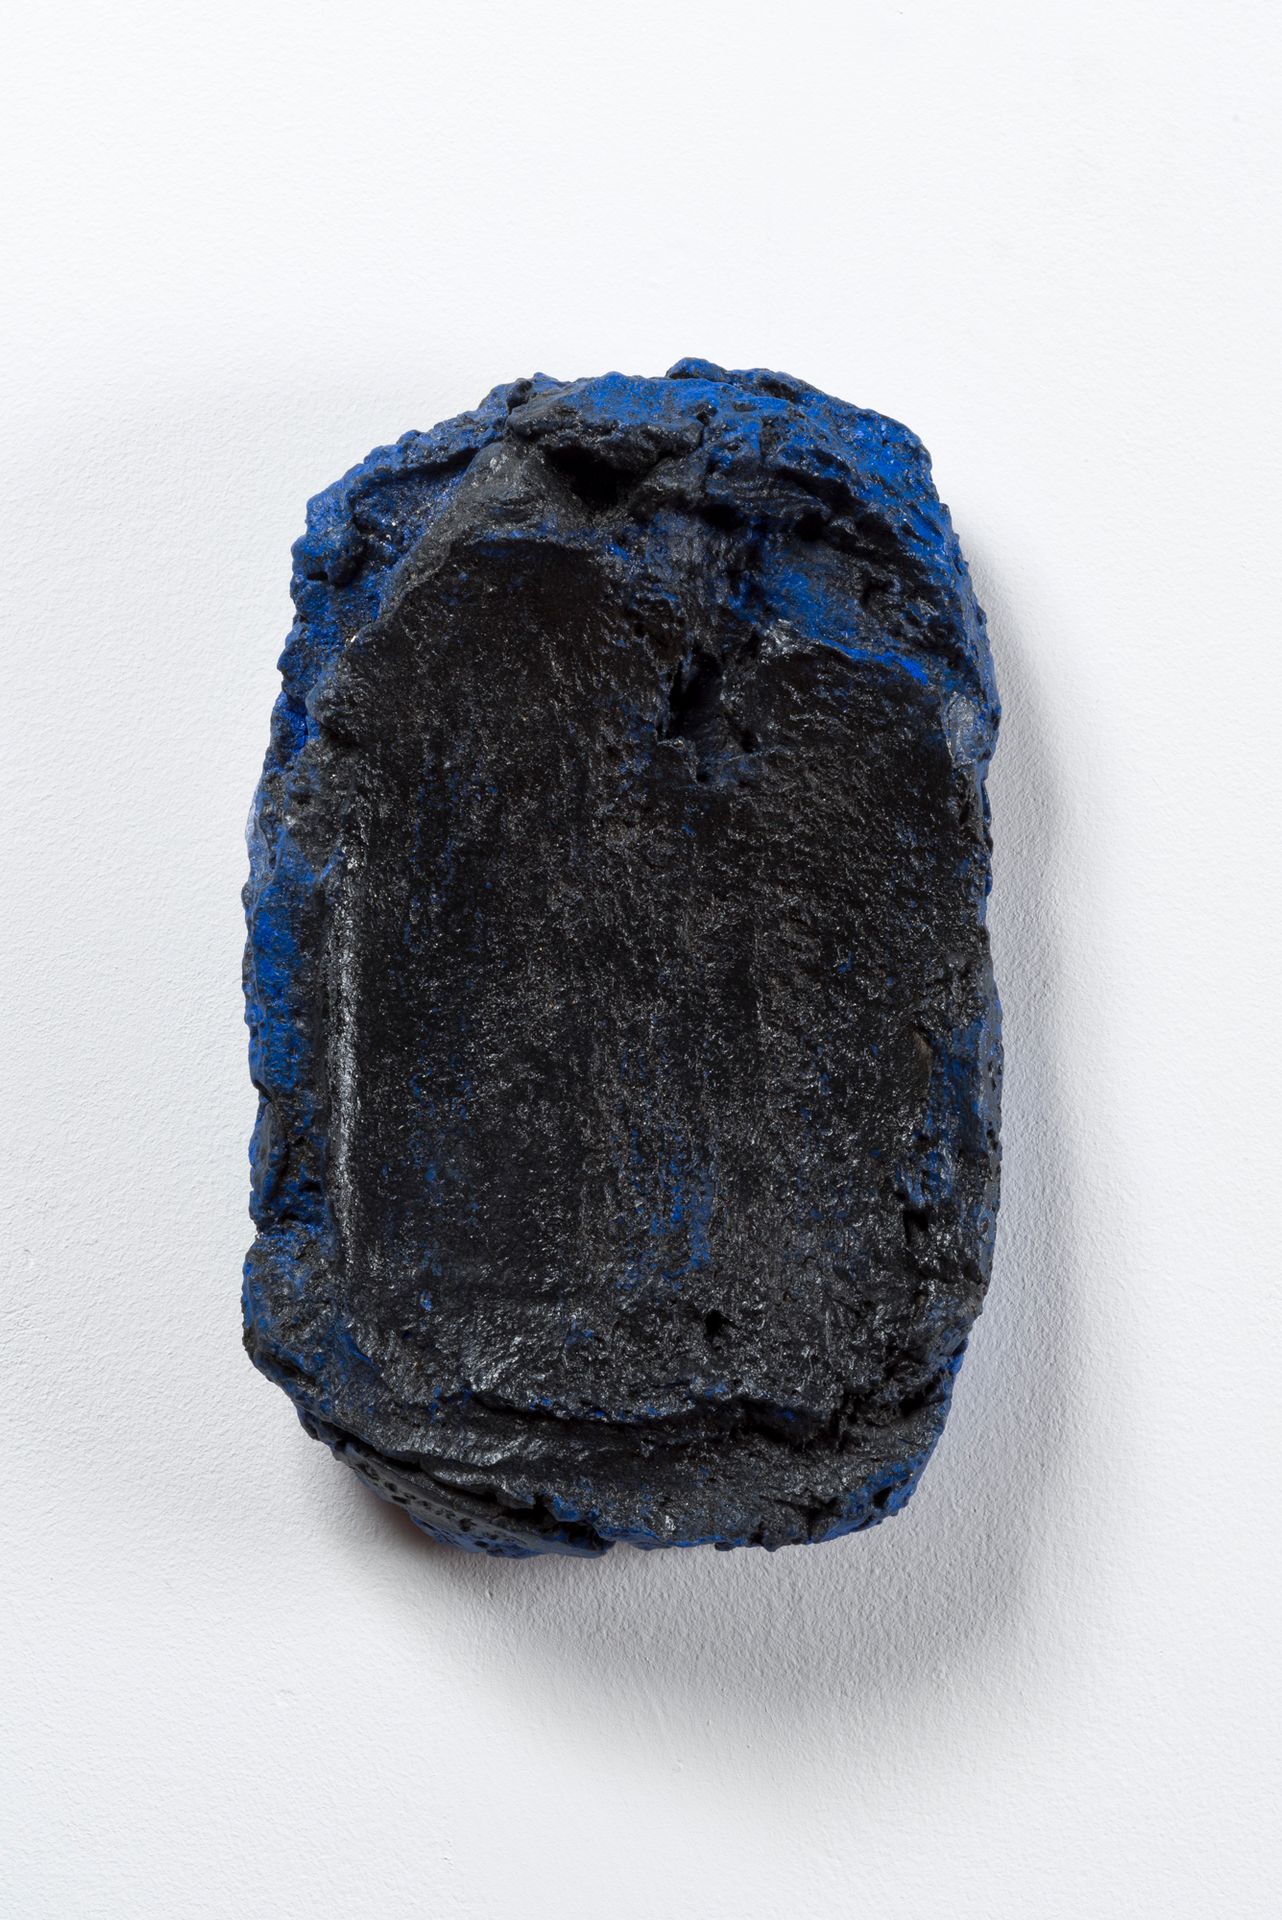 BRAM BOGART (1921-2012) 蓝与黑，1998年（第9期）。
彩绘陶瓷。
边上有签名和日期。
编号为EAI（9），背面有日期。
F版。德利耶，&hellip;